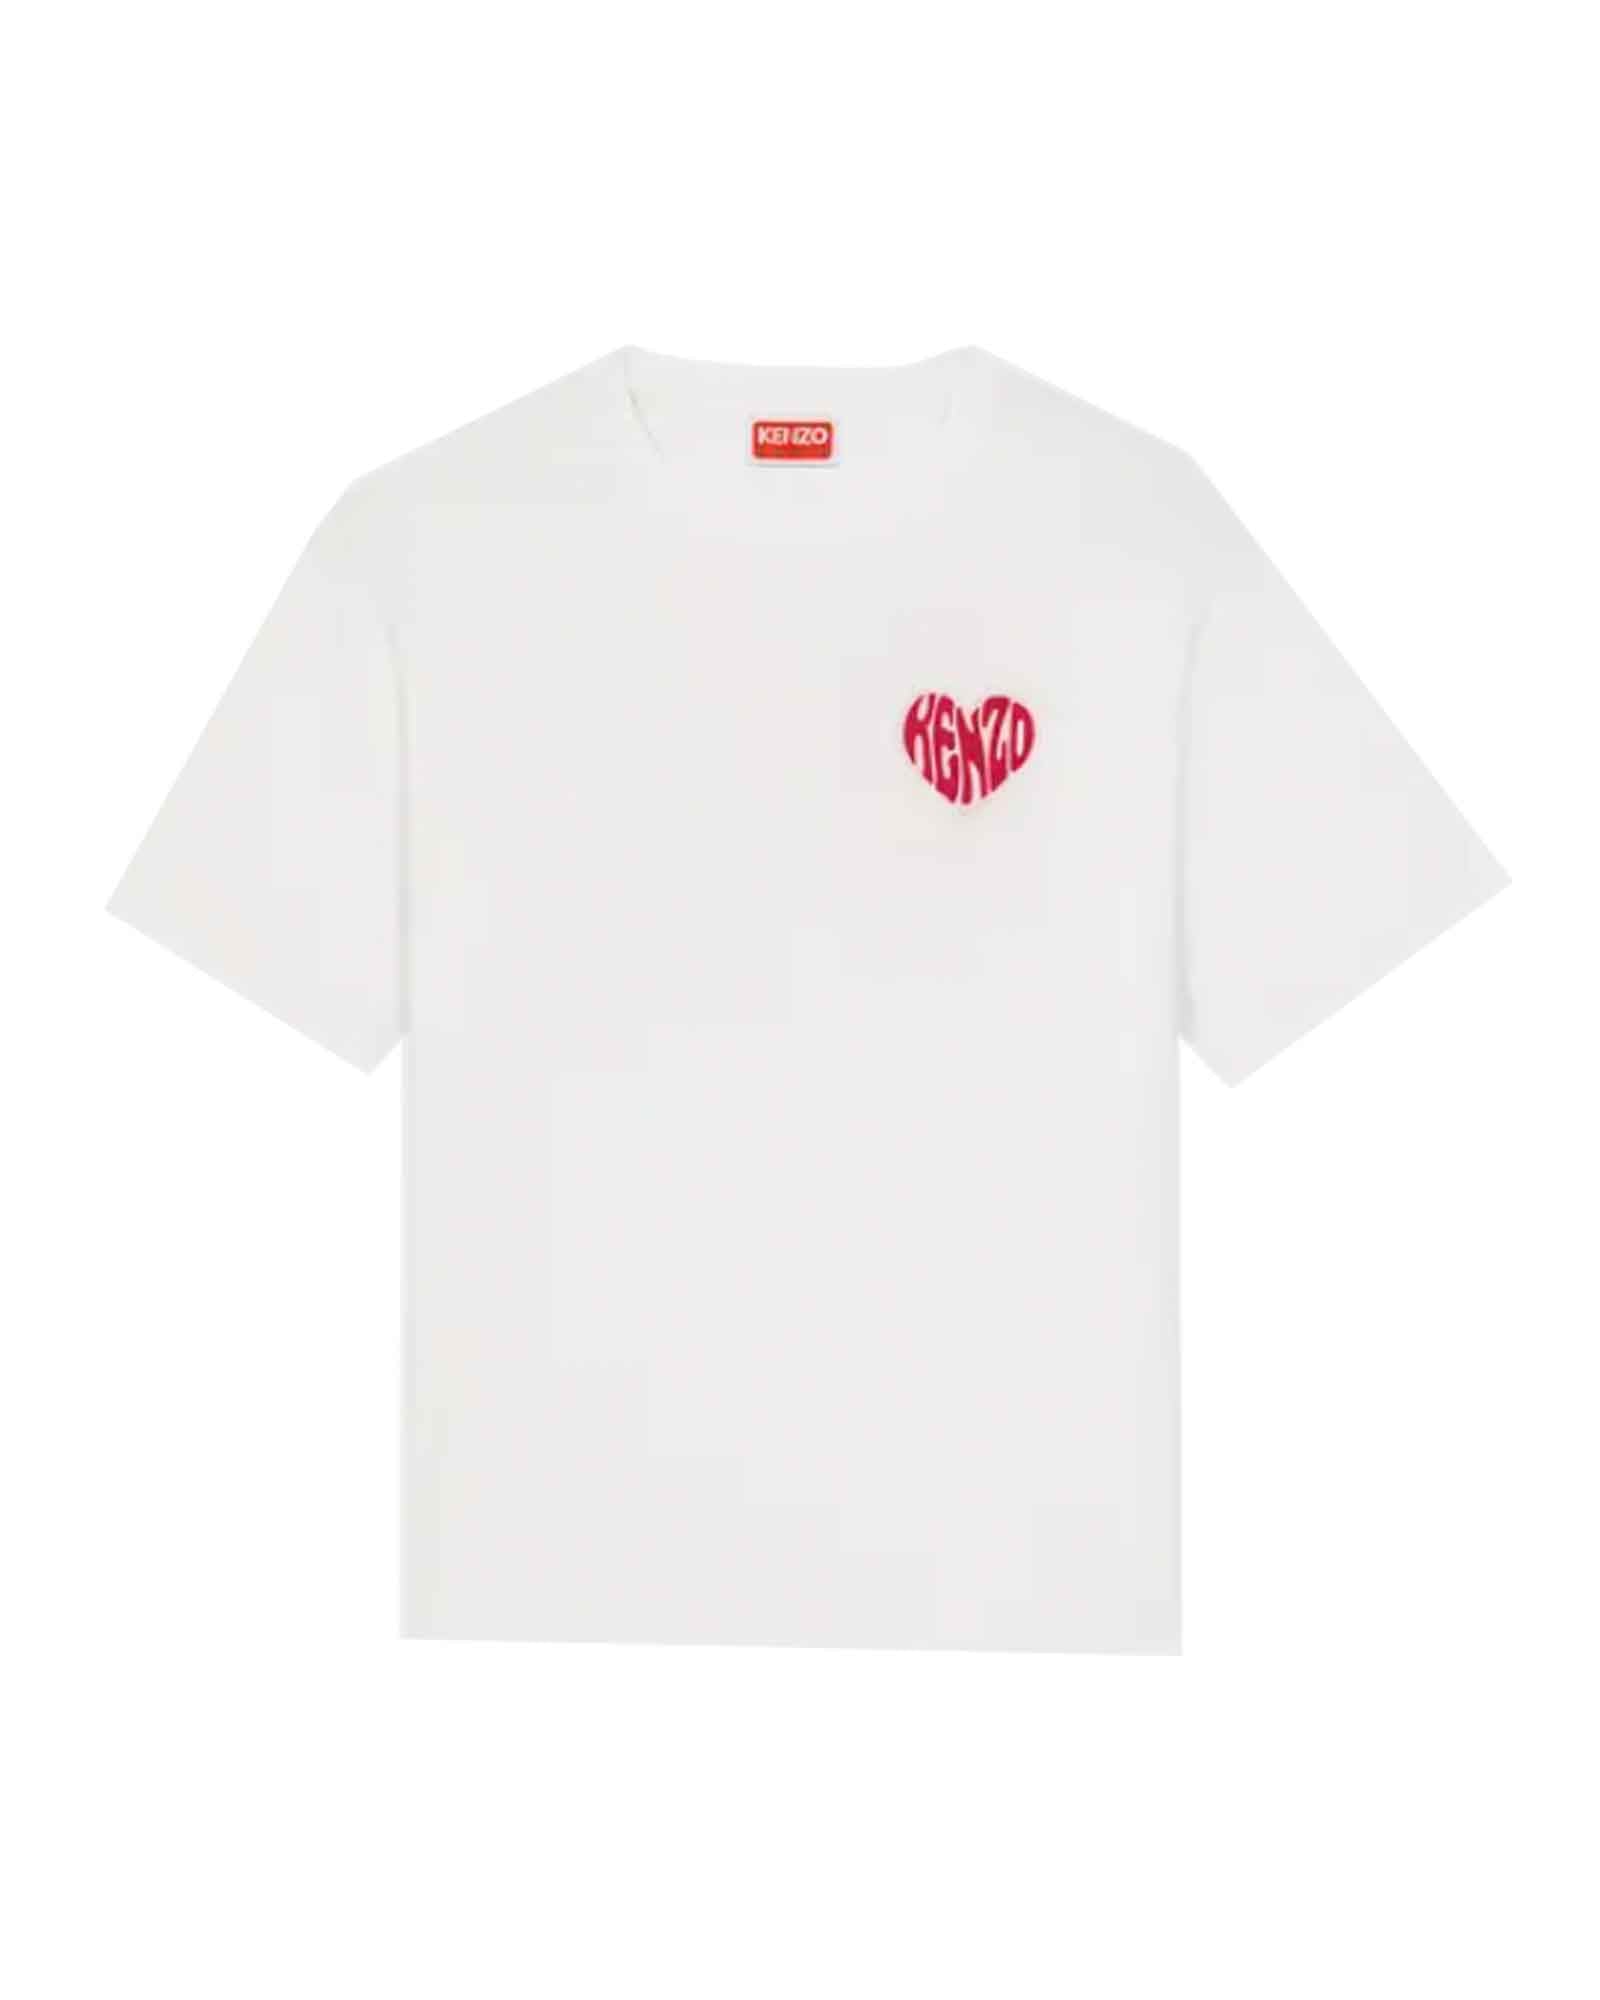 ついに再販開始！ KENZO Heart オーバーサイズ コットン Tシャツ 送関込 国内発送 - メンズファッションu003eトップスu003eTシャツ・カットソー